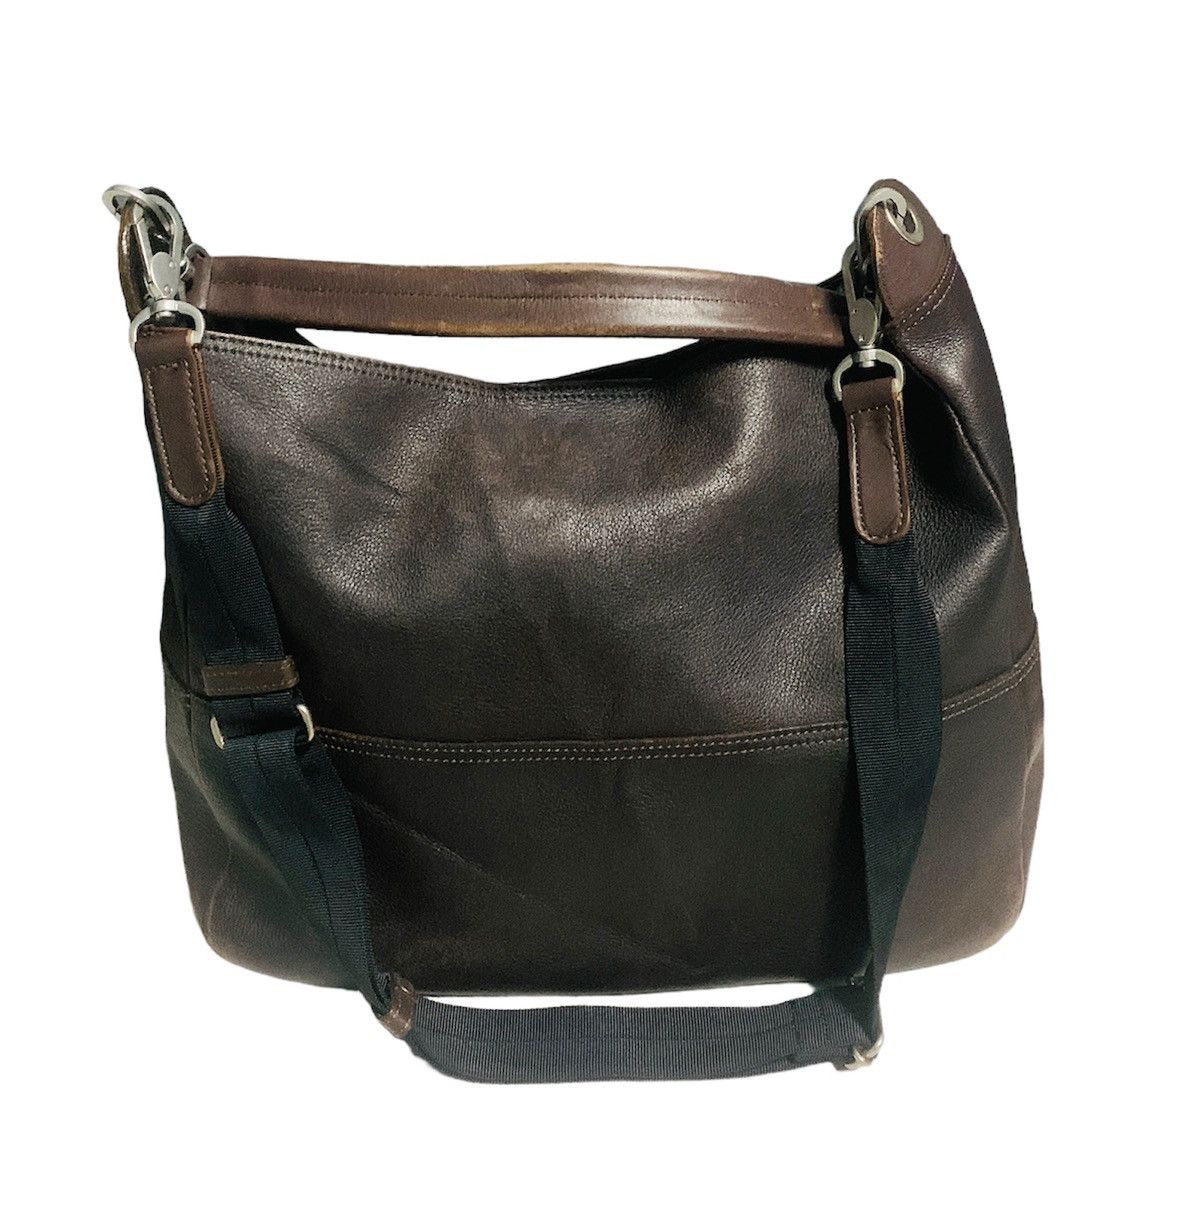 Margaret Howell Margaret Howell brown leather sling/shoulder bag Size ONE SIZE - 2 Preview